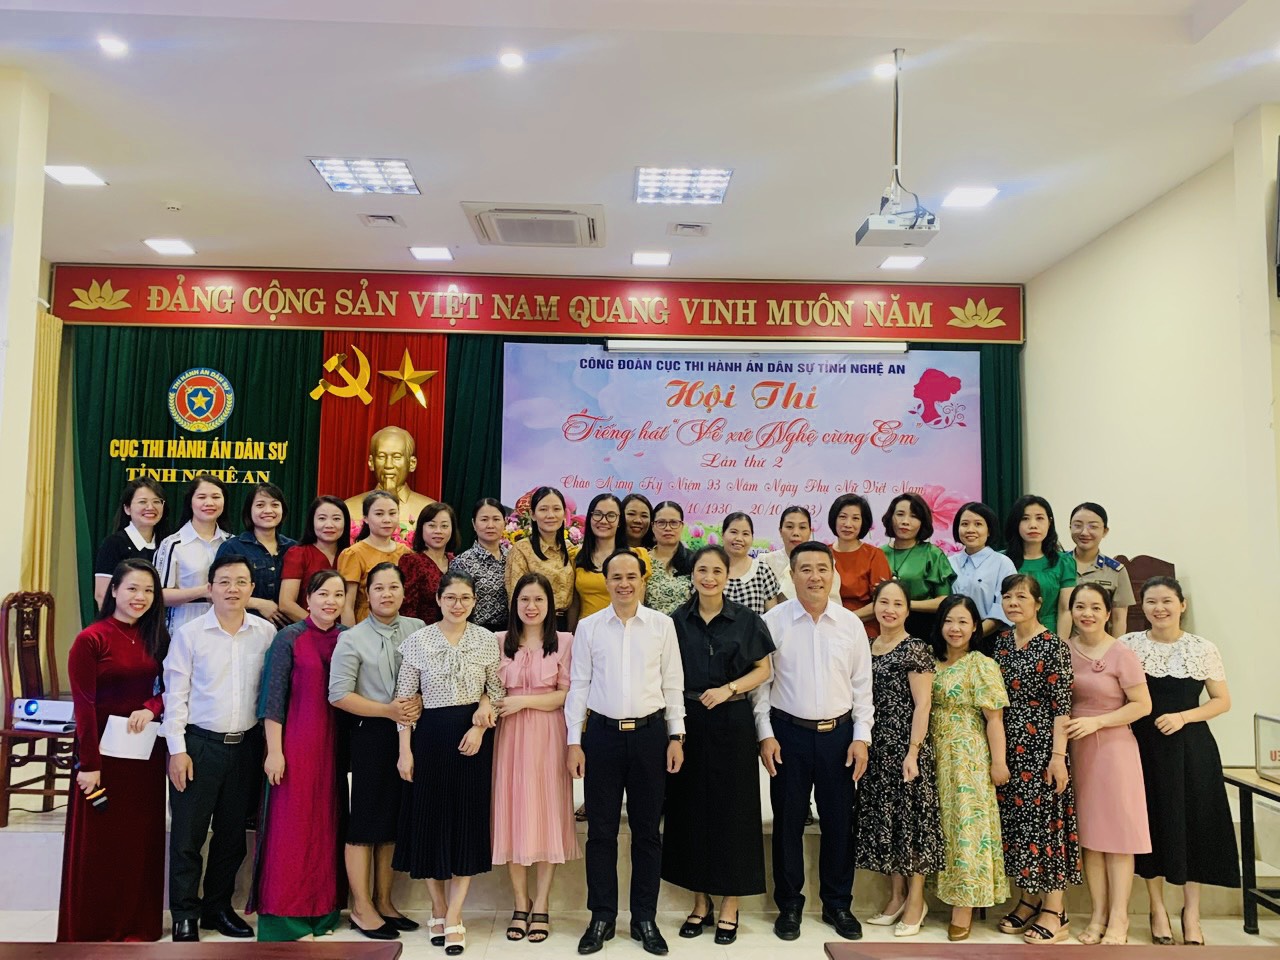 Cục Thi hành án dân sự tỉnh Nghệ An tổ chức hội thi “Về xứ nghệ cùng em” (lần thứ hai).